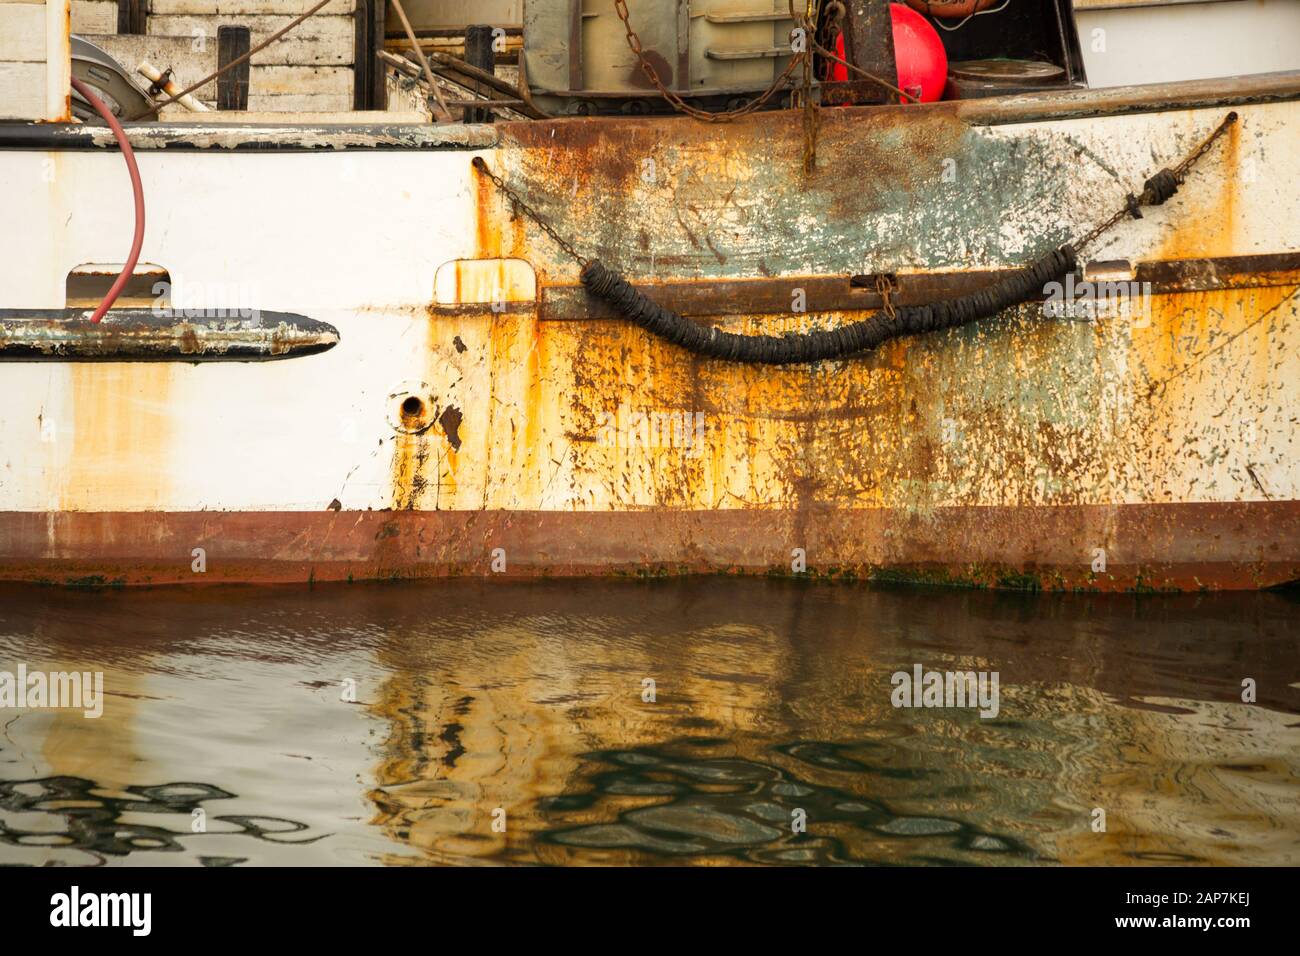 Antiguo barco de pesca oxidado esperando en el puerto. Foto de stock